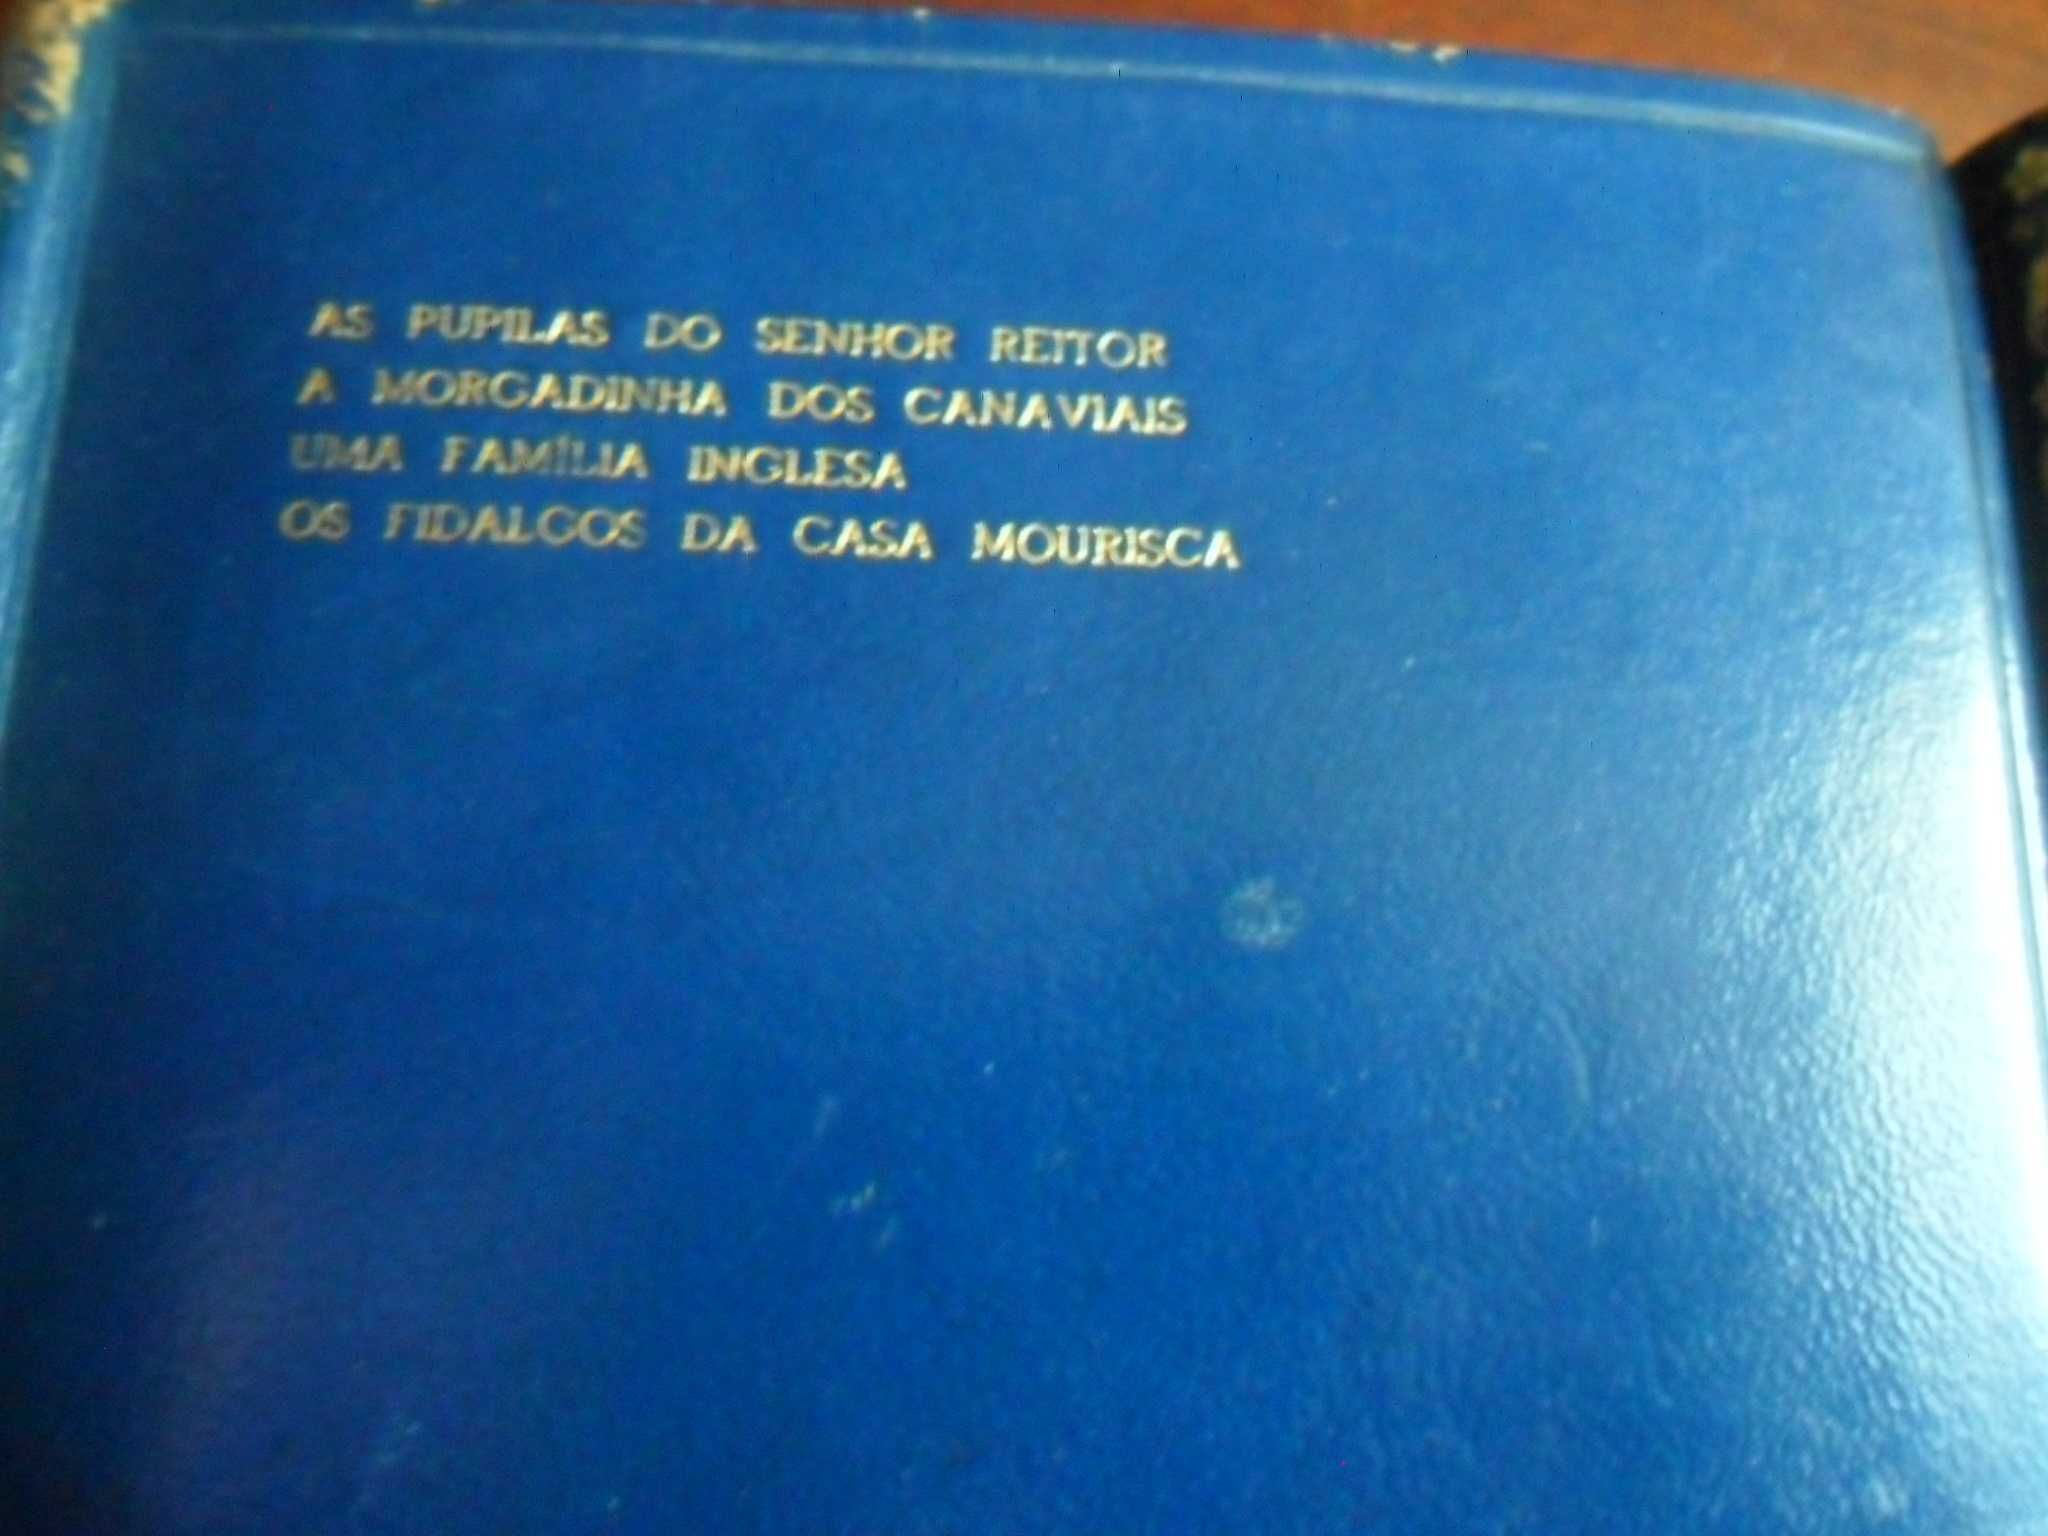 "Obras de Júlio Dinis" de Júlio Dinis - 2 Volumes em Papel Bíblia